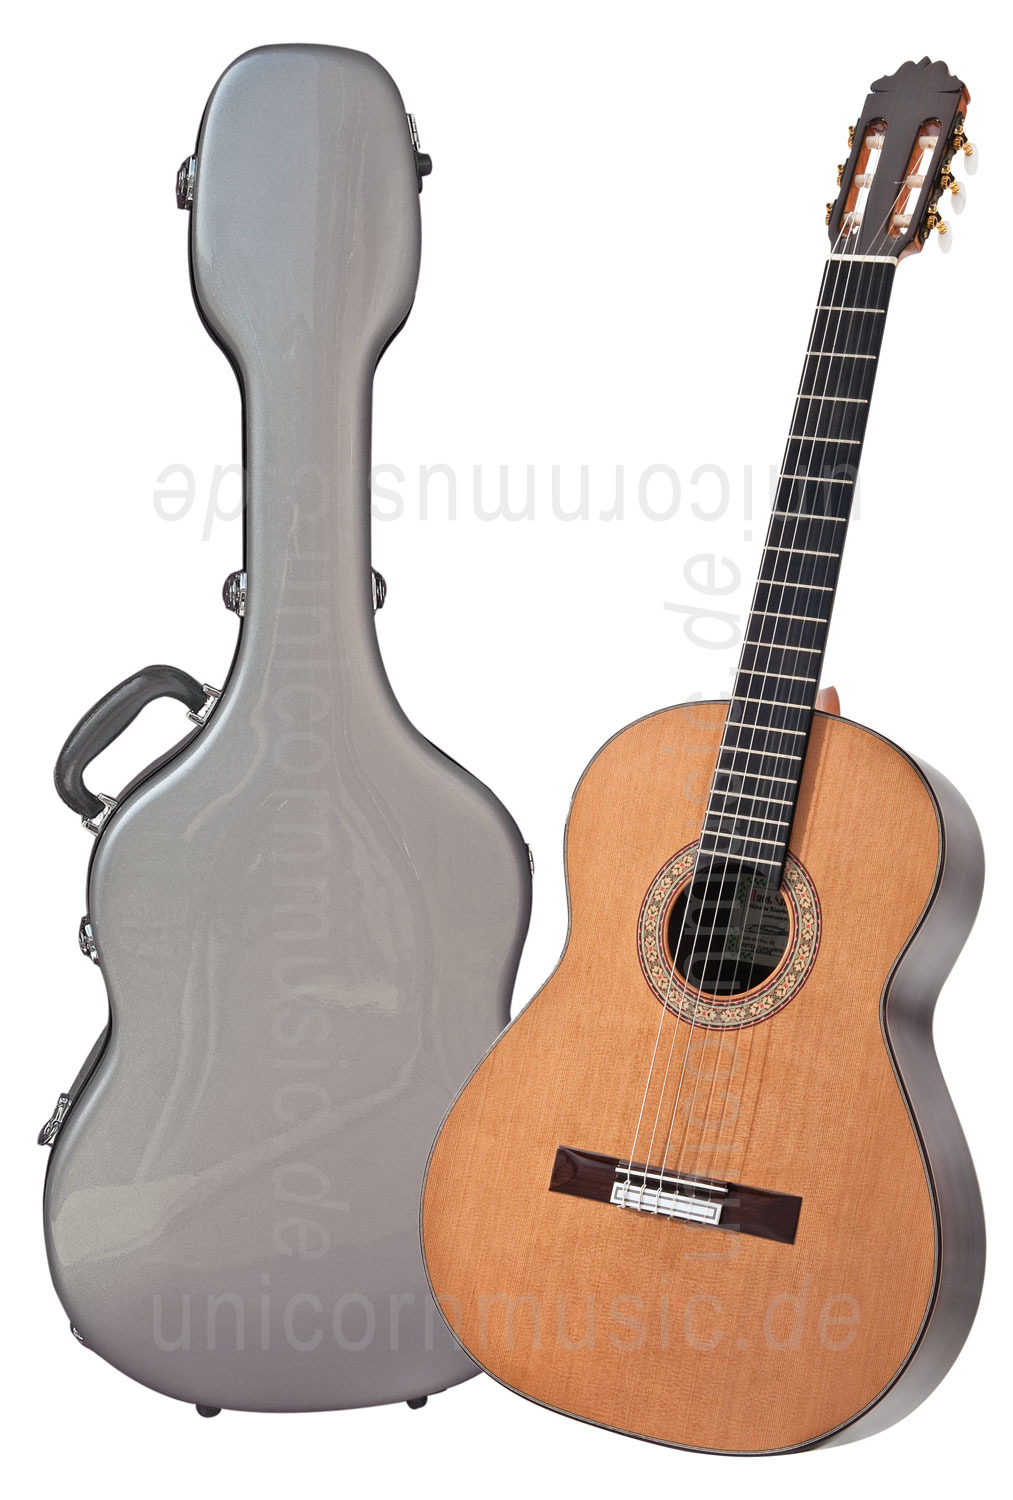 to article description / price Spanish Classical Guitar HERMANOS SANCHIS LOPEZ Model EXTRA CONCIERTO CAVIUNA - all solid - cedar top + case